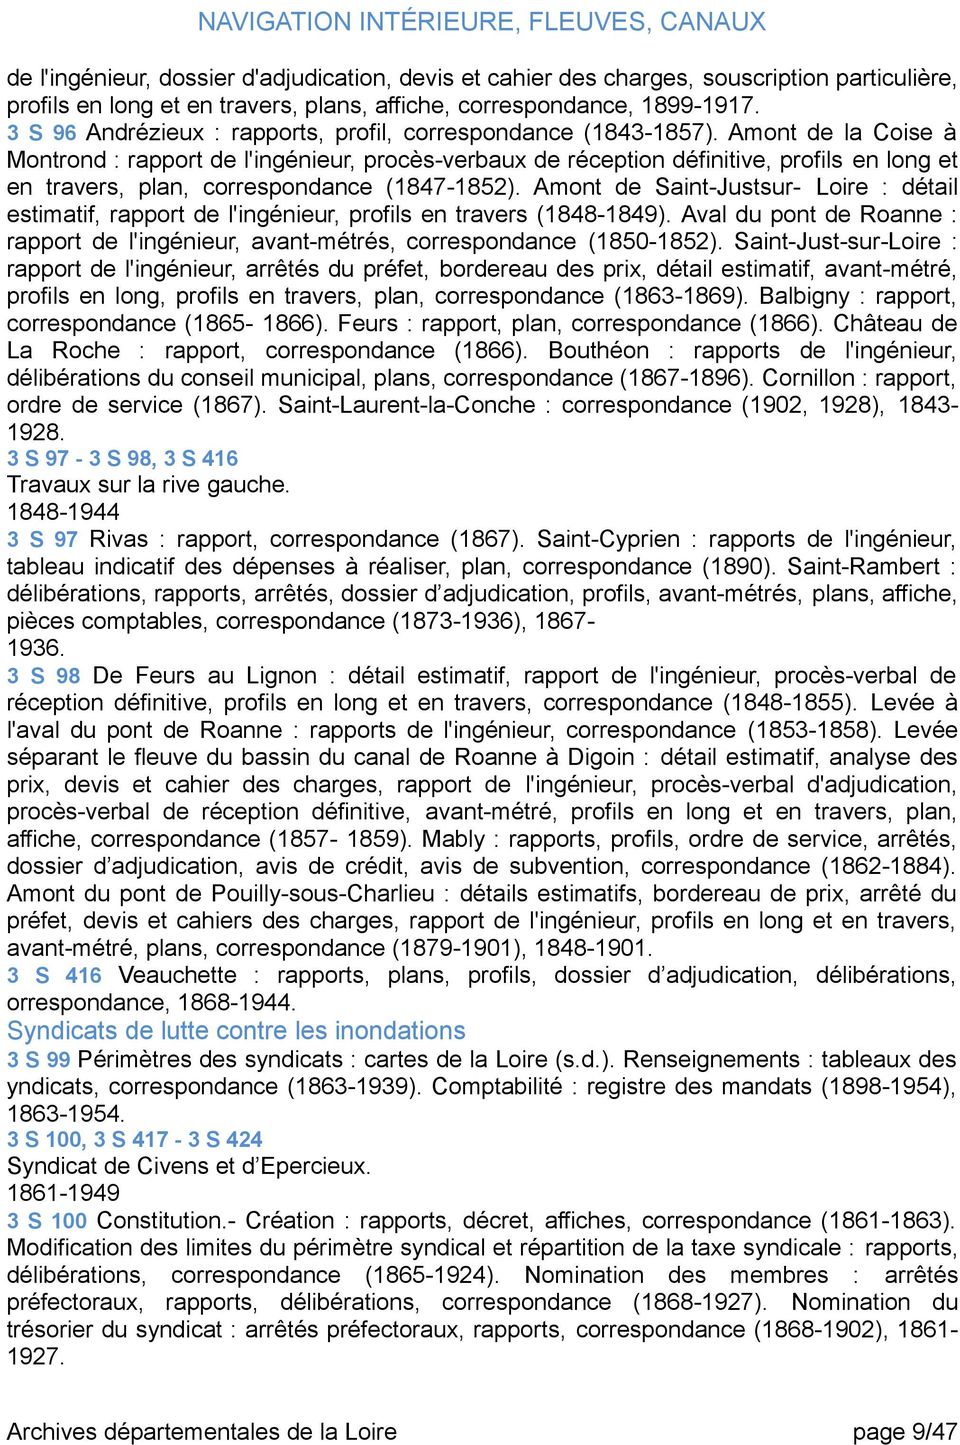 Amont de la Coise à Montrond : rapport de l'ingénieur, procès-verbaux de réception définitive, profils en long et en travers, plan, correspondance (1847-1852).